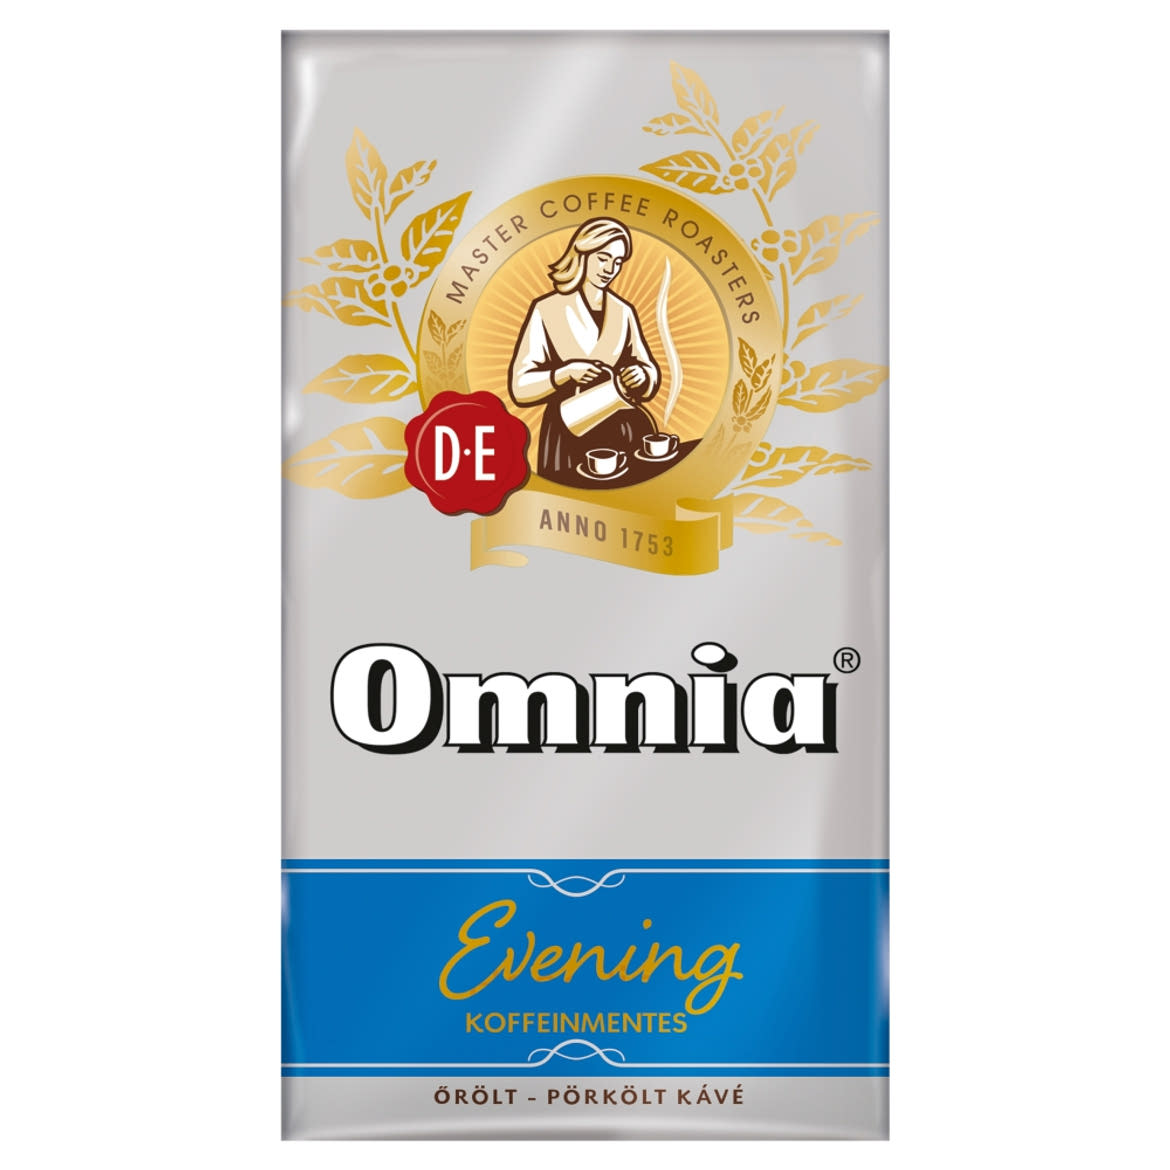 Douwe Egberts Omnia Evening koffeinmentes őrölt-pörkölt kávé